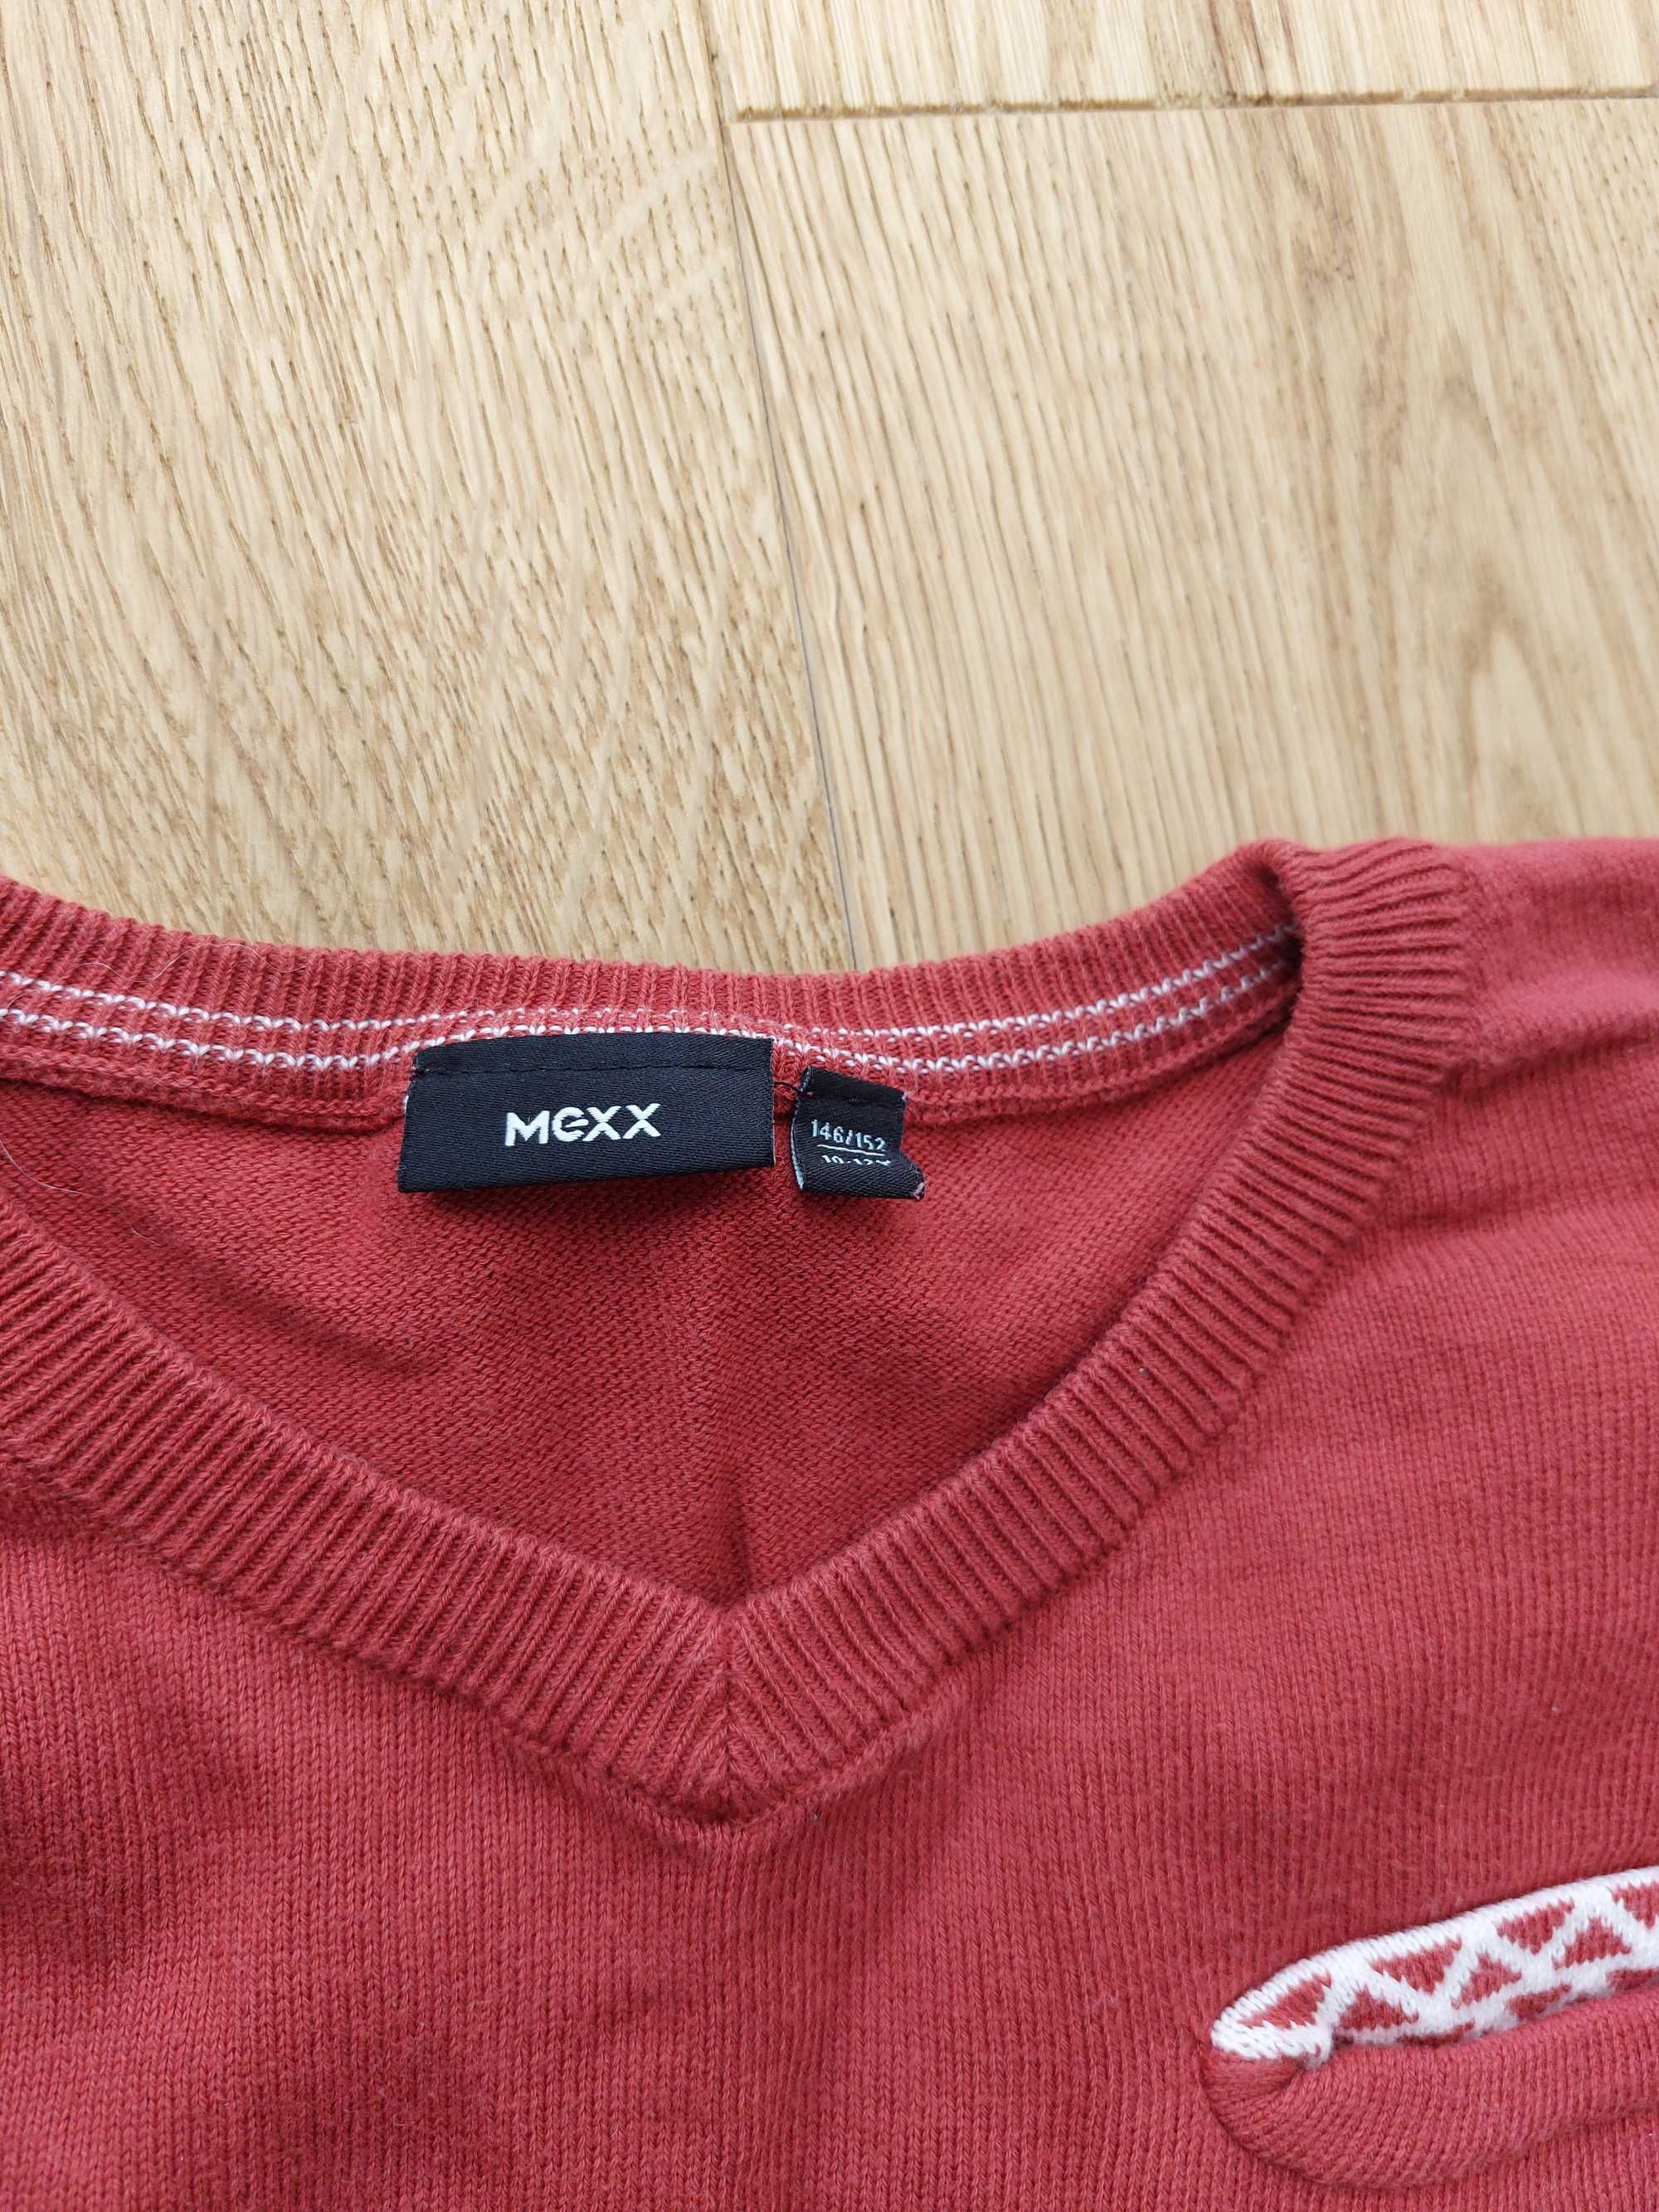 Sweter dla chłopca marki Mexx na wzrost 146/152